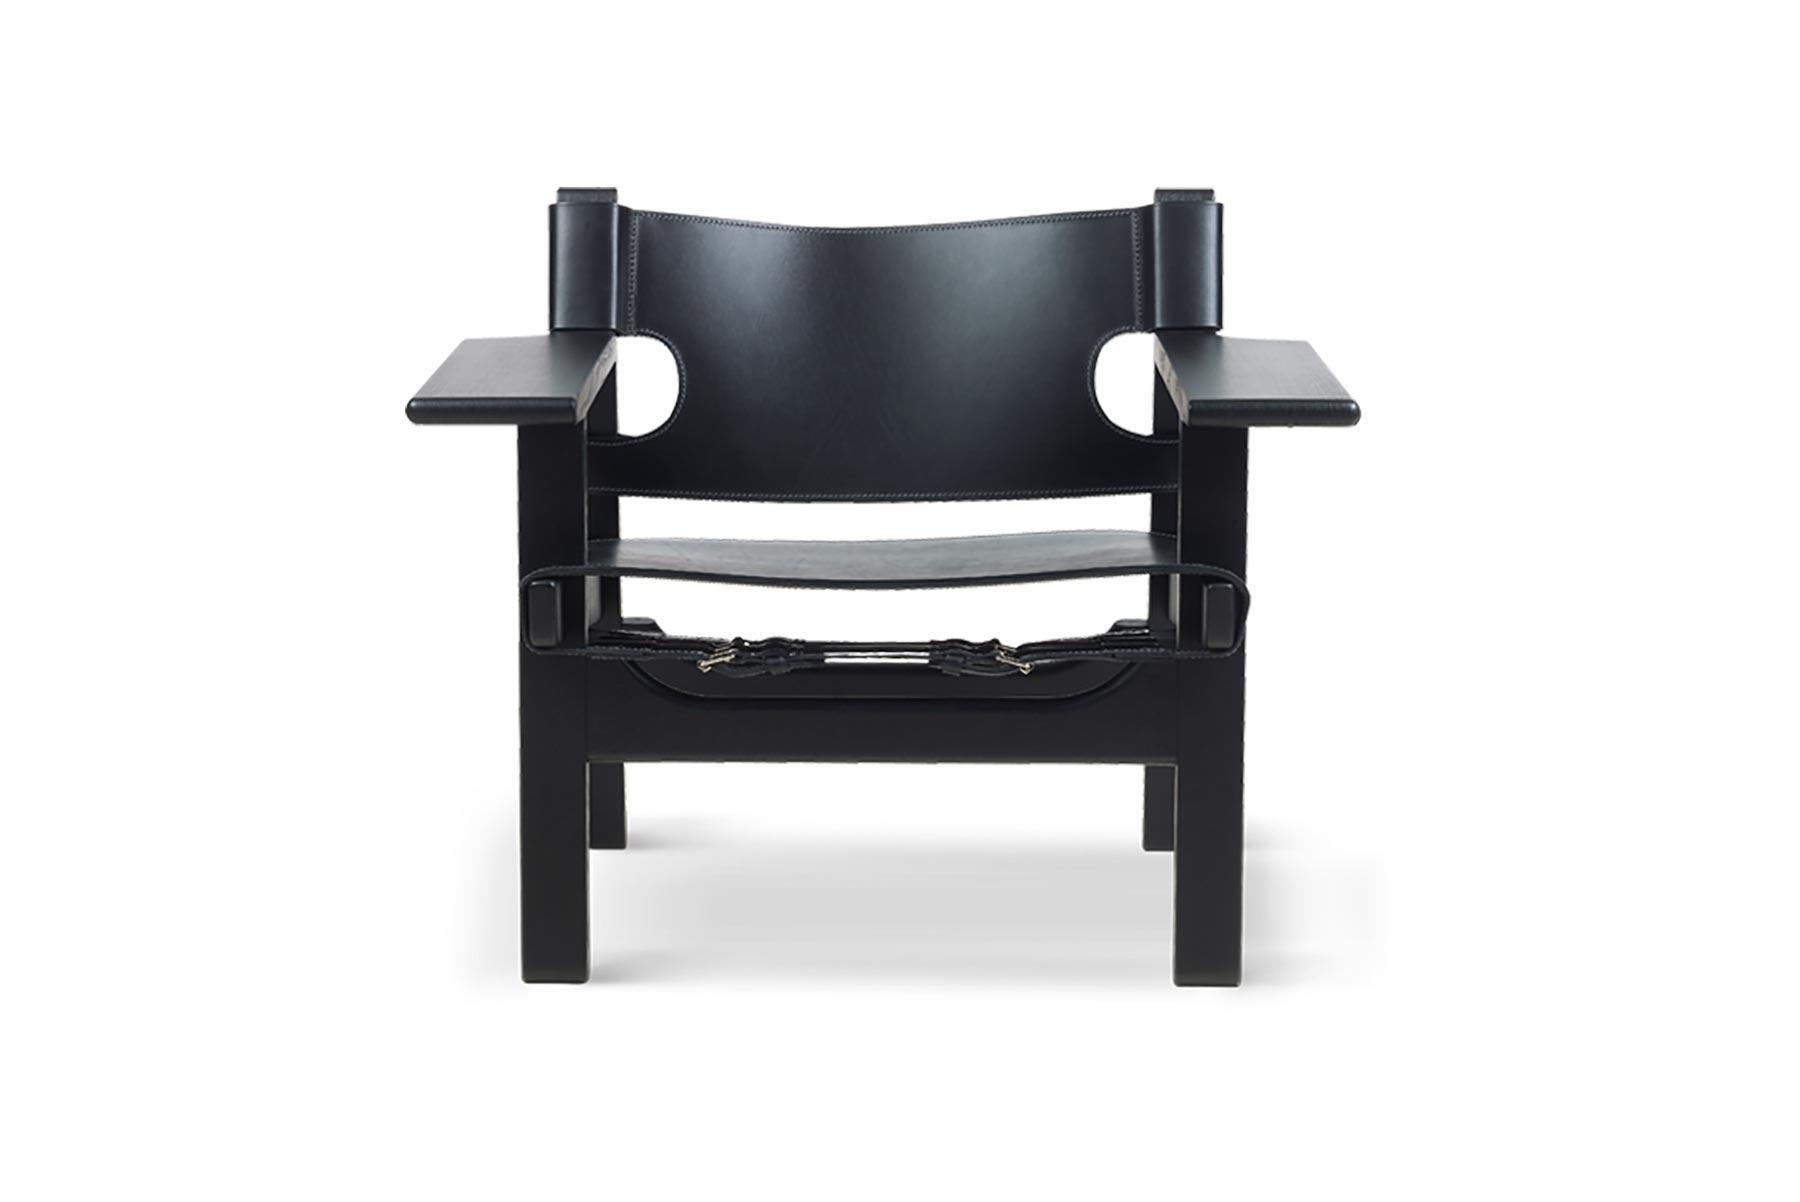 Mit dem spanischen Stuhl baute Mogensen seine Arbeit mit massiver Eiche und Sattelleder aus. Der Stuhl wurde 1958 im Rahmen einer innovativen Wohnraumausstellung vorgestellt, bei der alle Tische vom Boden entfernt wurden, um einen offenen Wohnraum